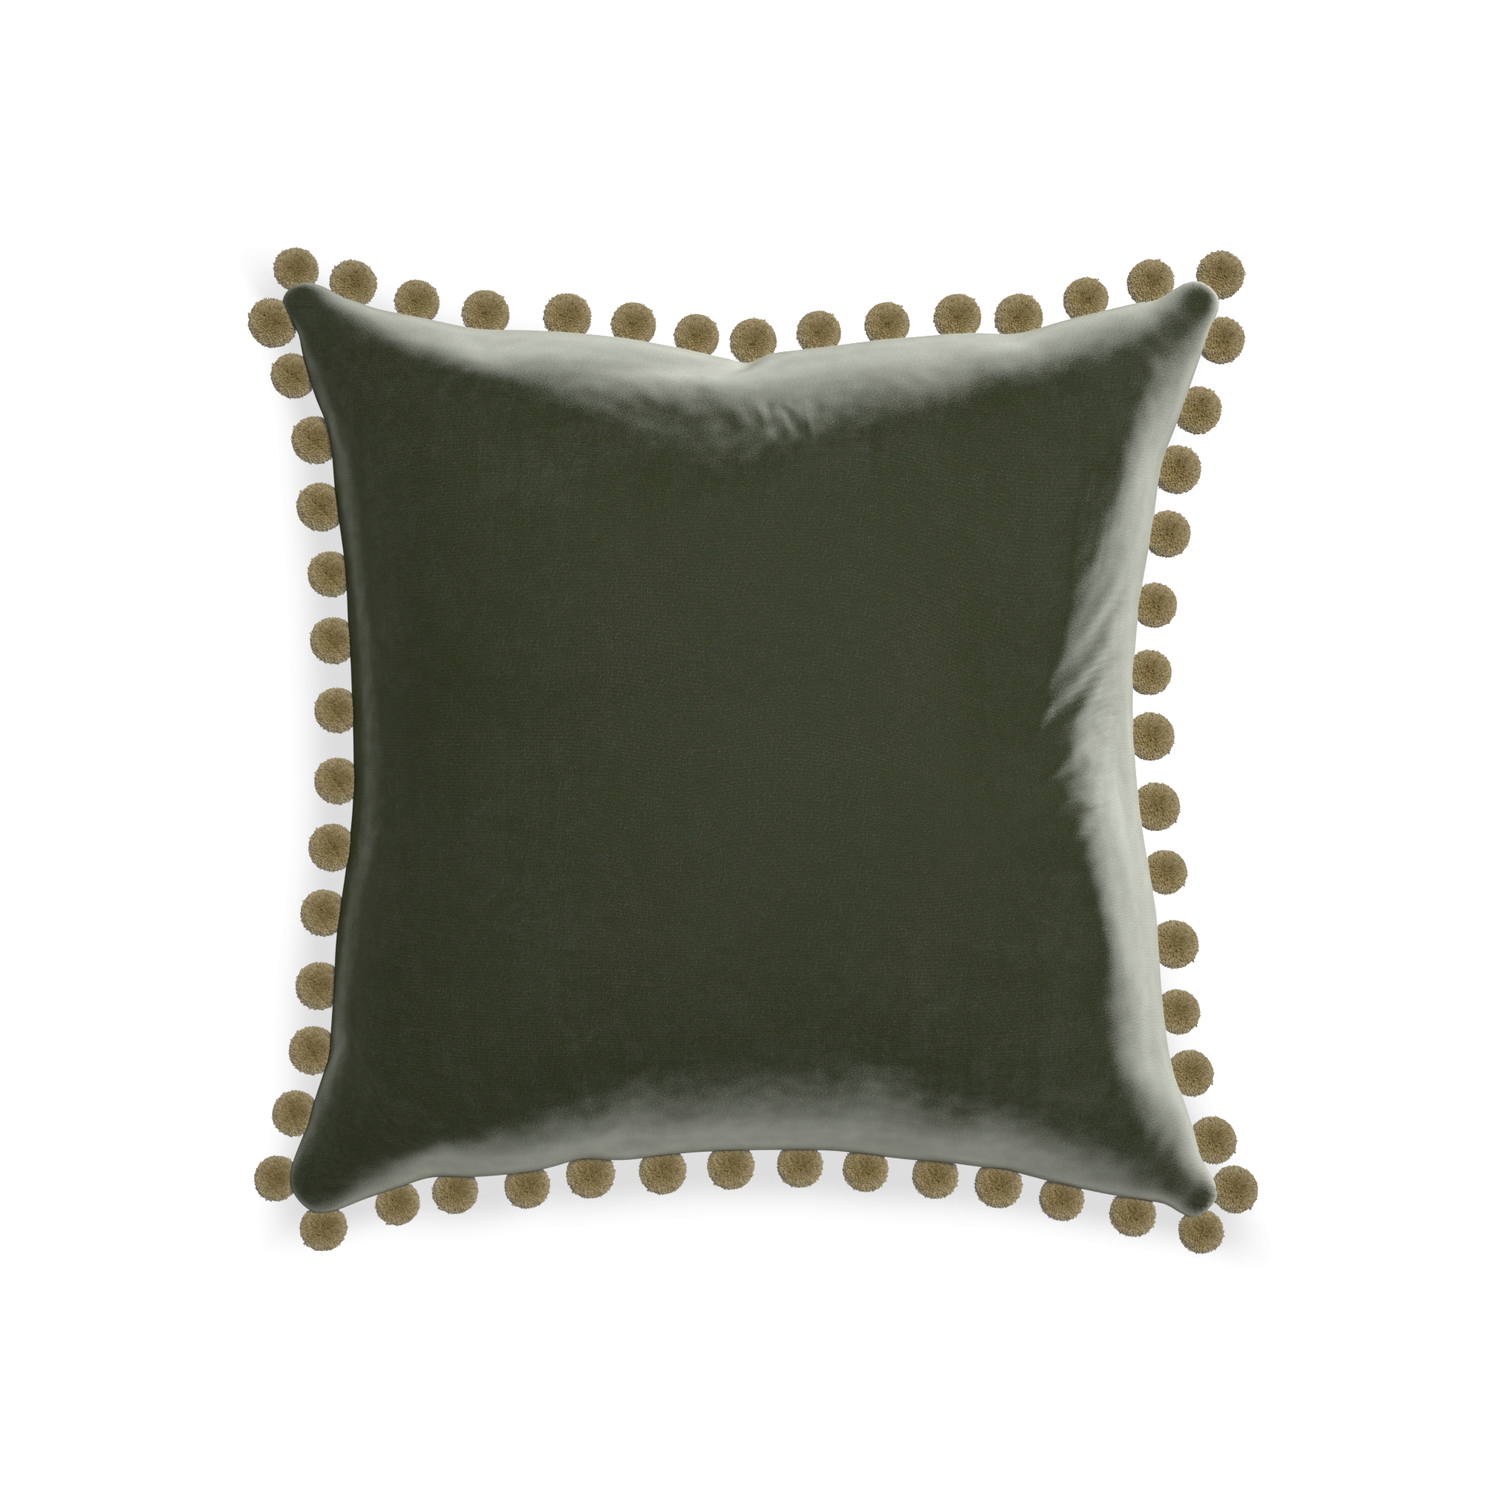 20-square fern velvet custom pillow with olive pom pom on white background